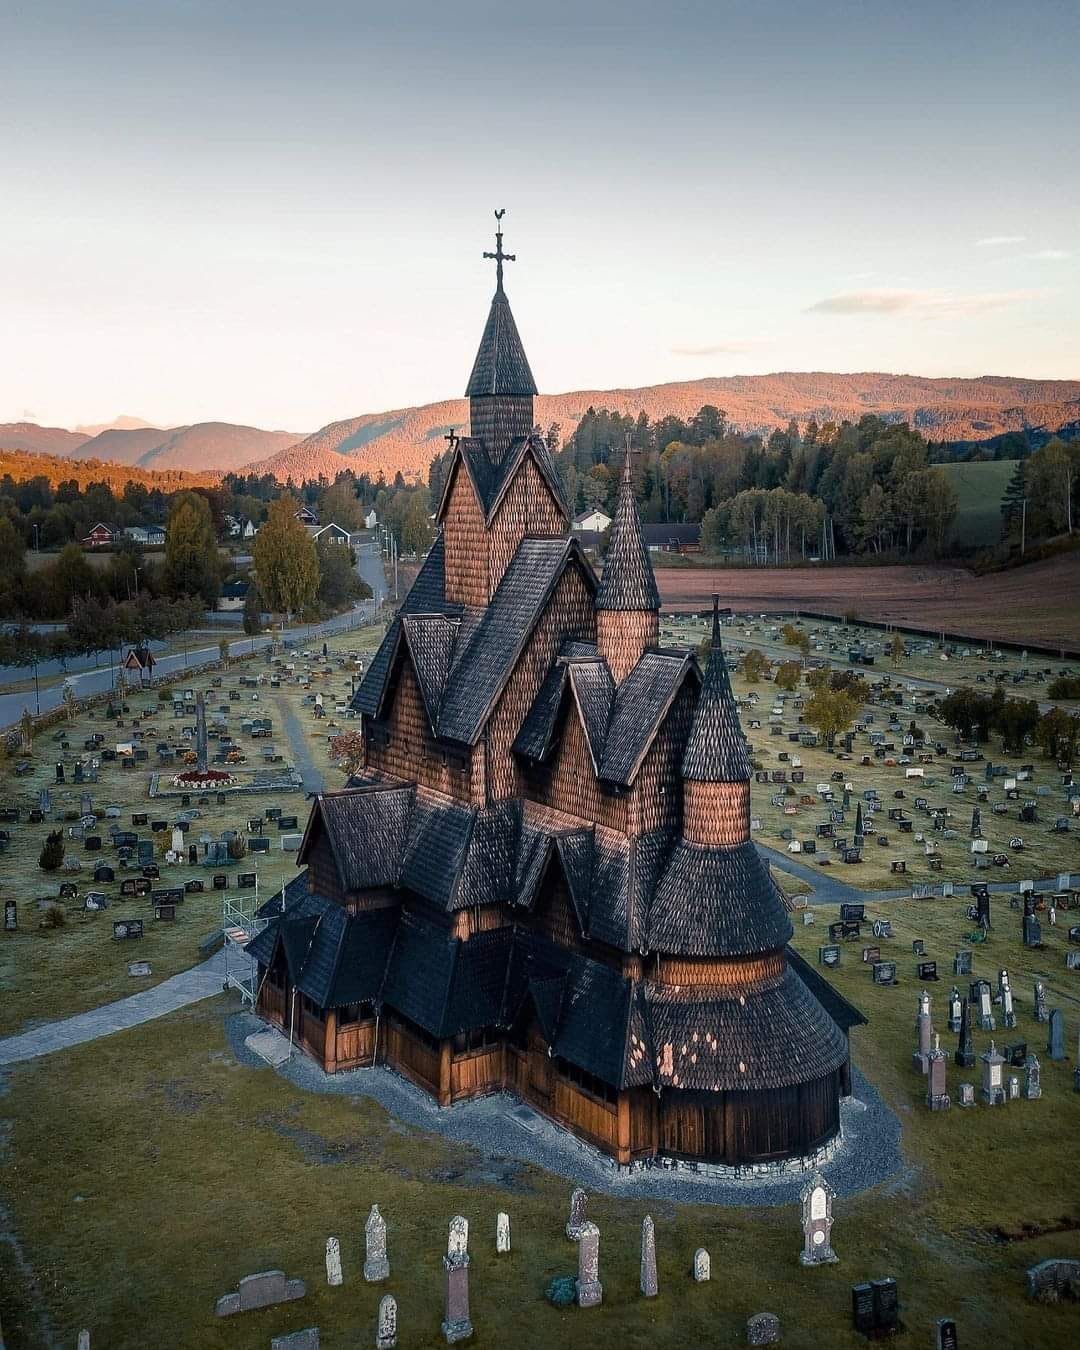 这是挪威的博尔贡教堂,完全由木材制成,建于800多年前